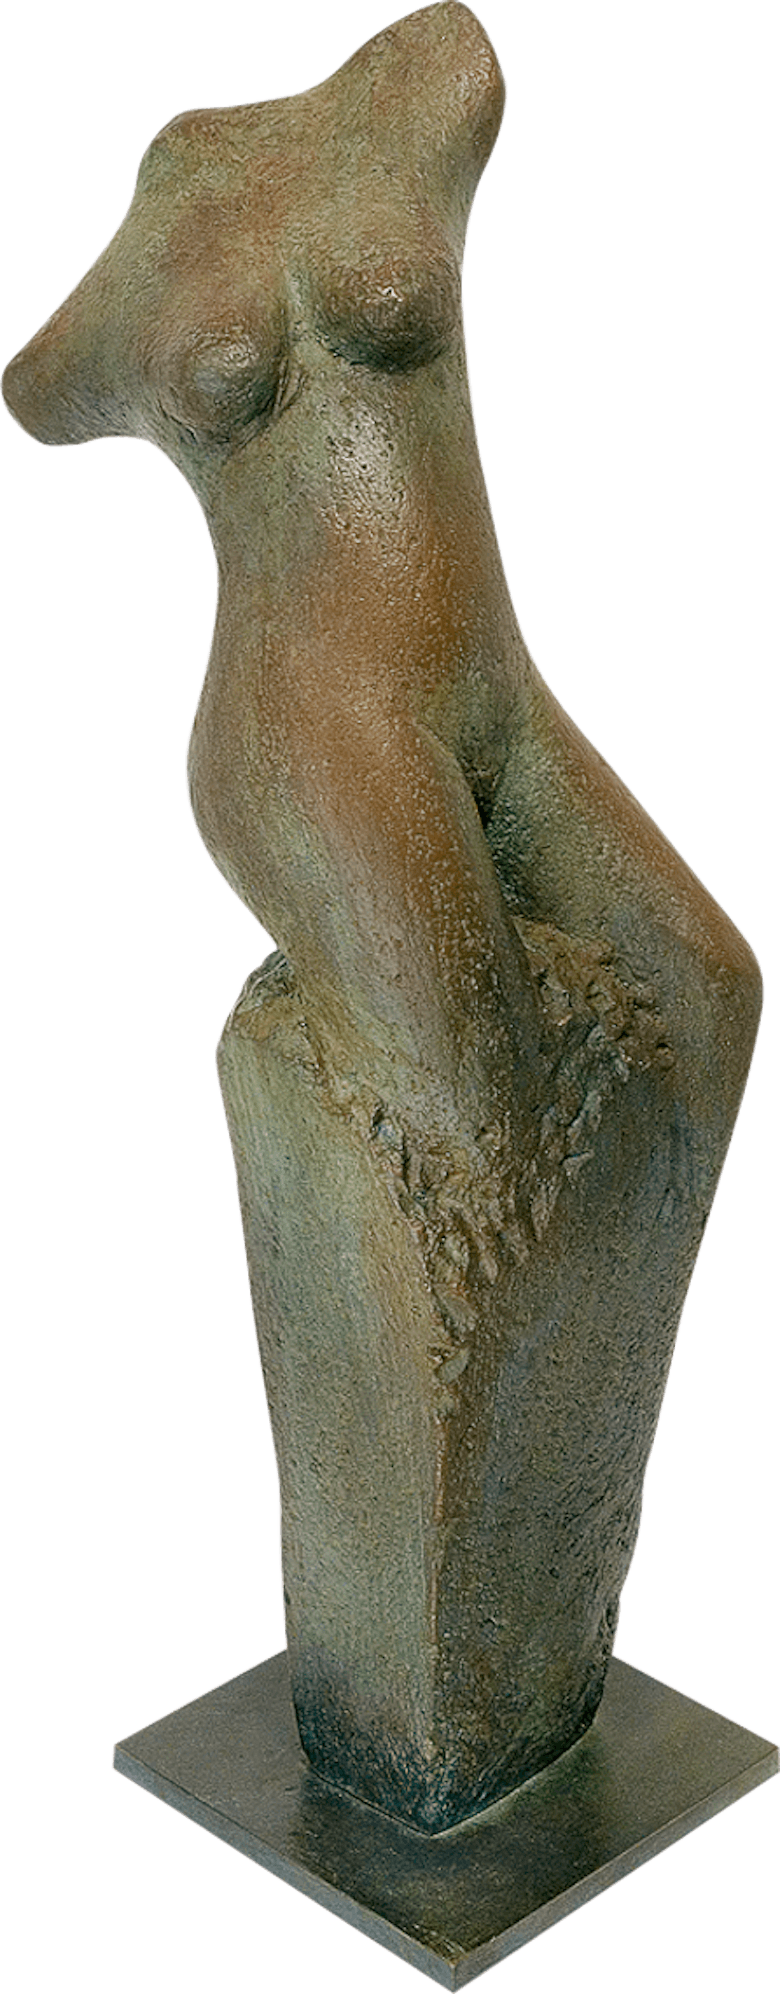 Bronzefigur Auferstehung des menschlichen Phönix von David Verstege